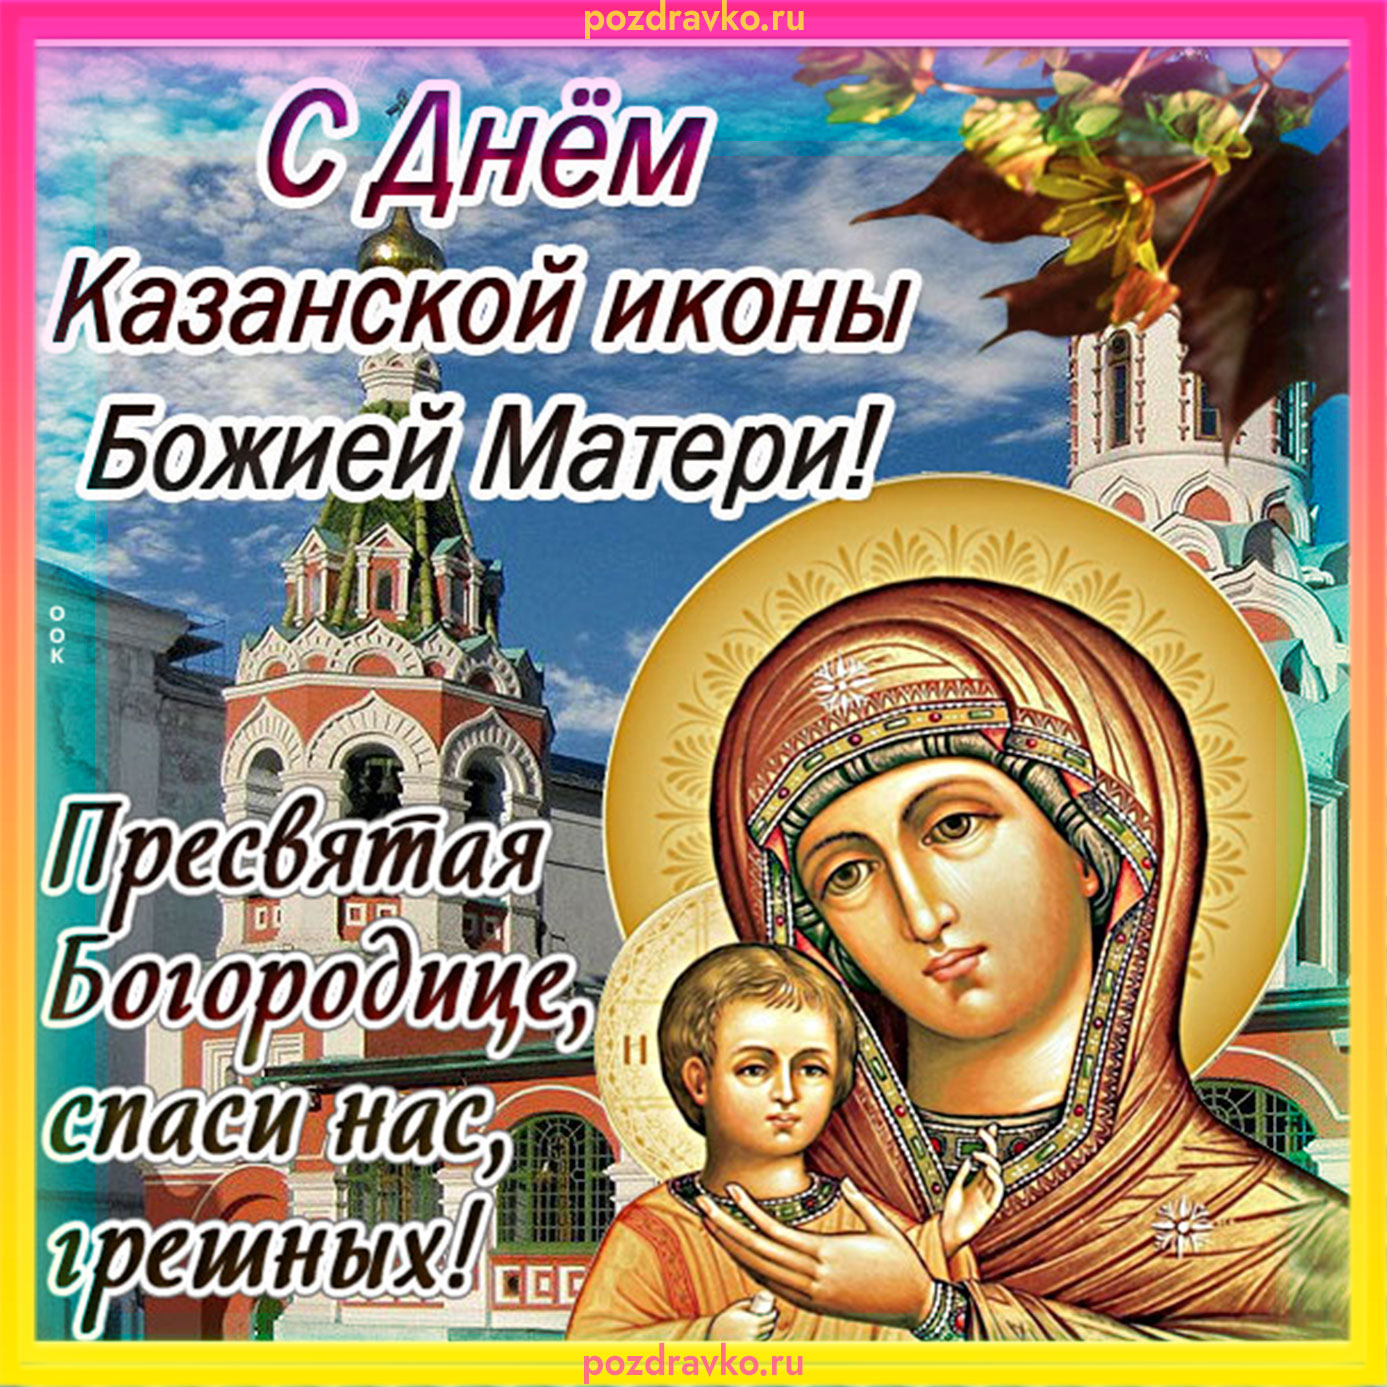 Фото С Днем иконы Казанской Божьей Матери: Загрузка бесплатно